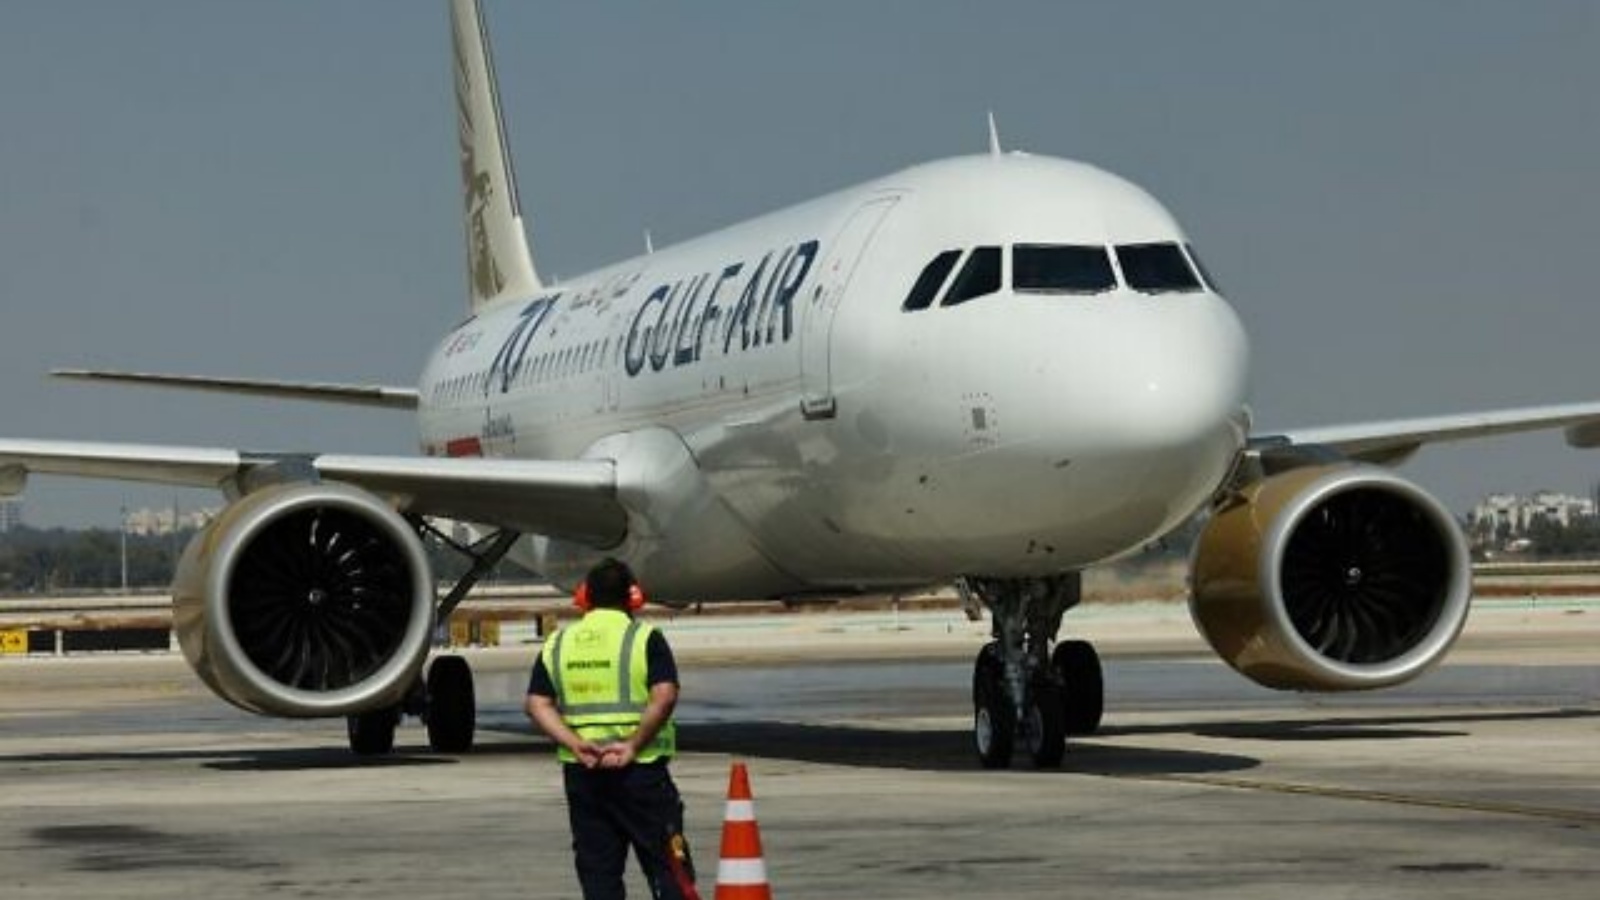 طائرة تابعة لطيران الخليج A320 قادمة من العاصمة البحرينية المنامة تصل إلى مطار بن غوريون بالقرب من تل أبيب. بتاريخ 30 أيلول/سبتمبر 2021.